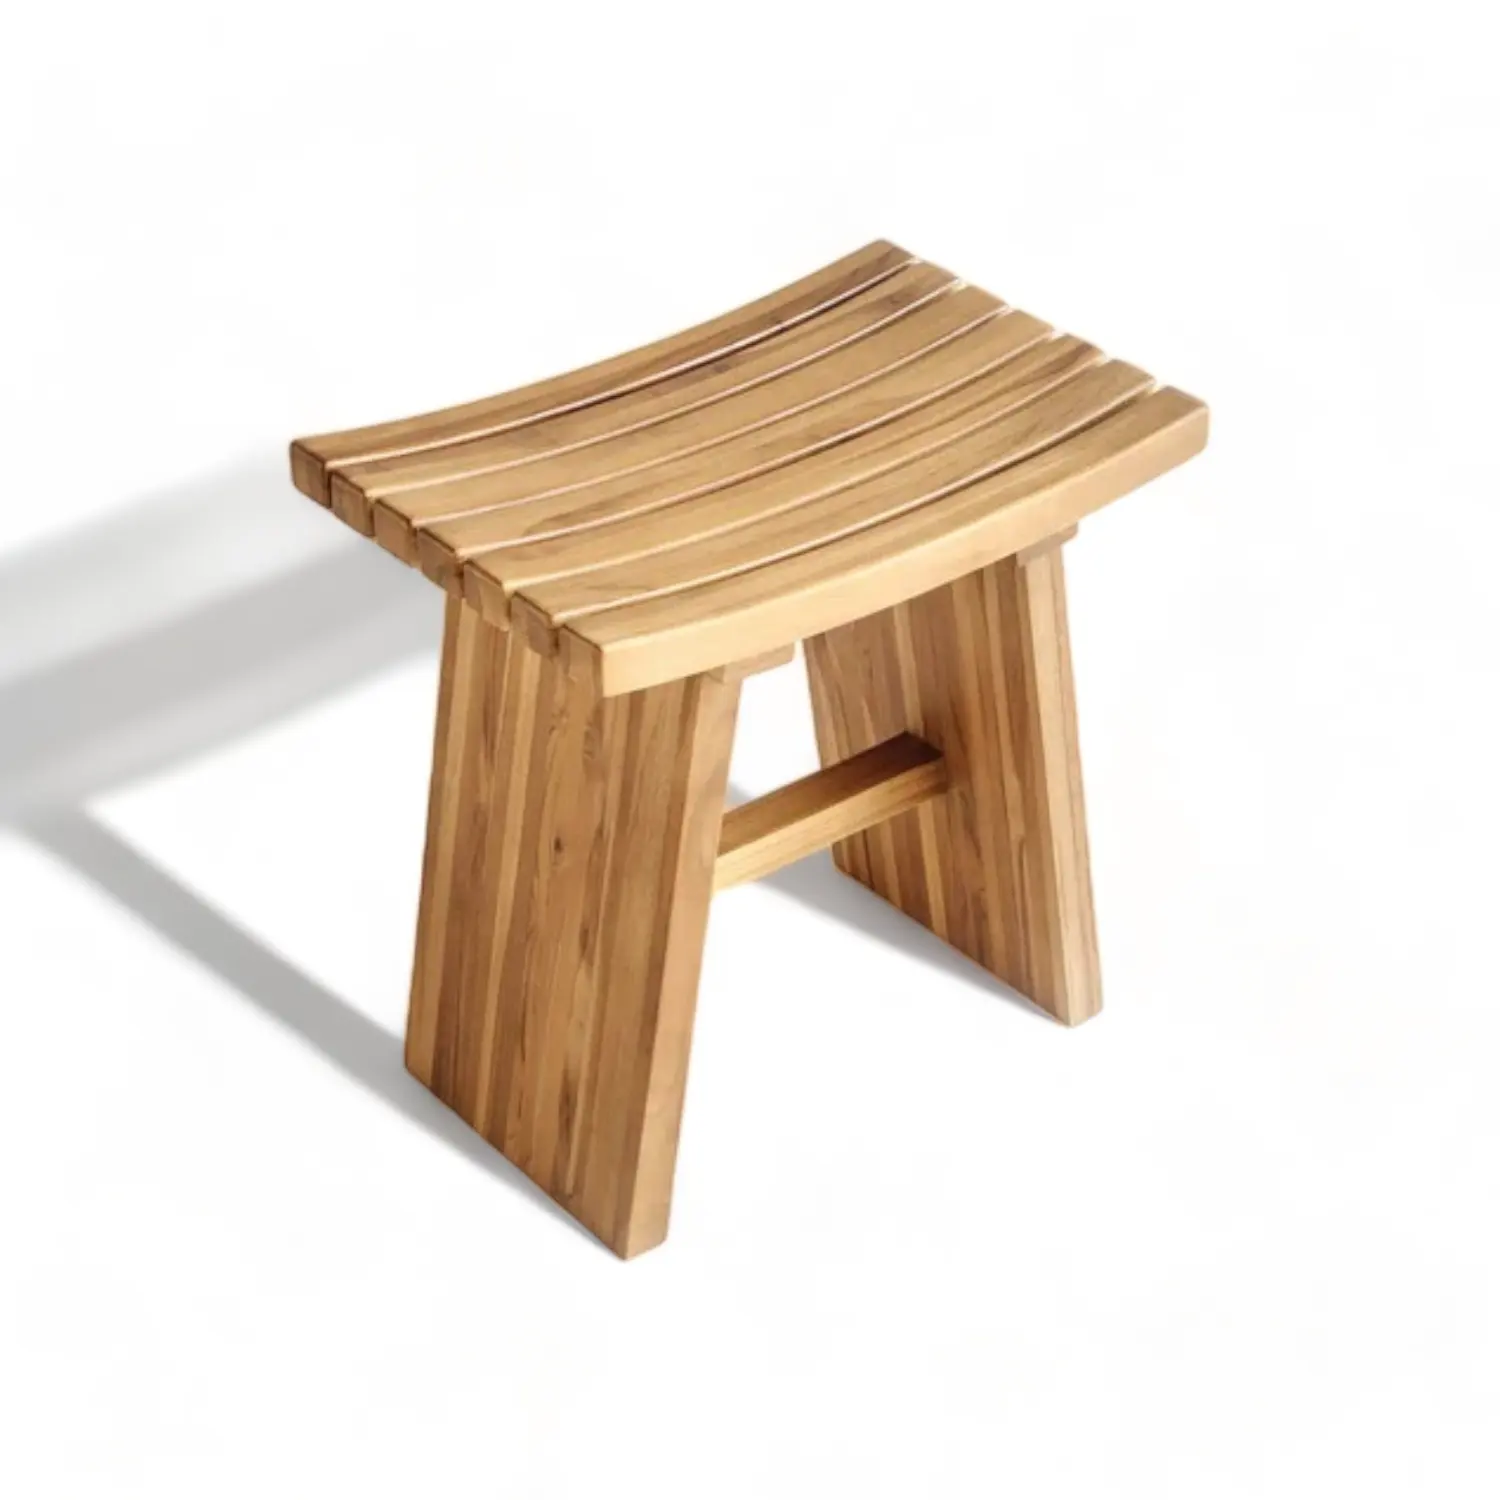 خشب أثاث للمدخل مصنوع يدويًا مقعد خشبي خشبي طبيعي كرسي دش خشبي منحني للاستحمام داخل المنزل وخارجه من خشب الساج